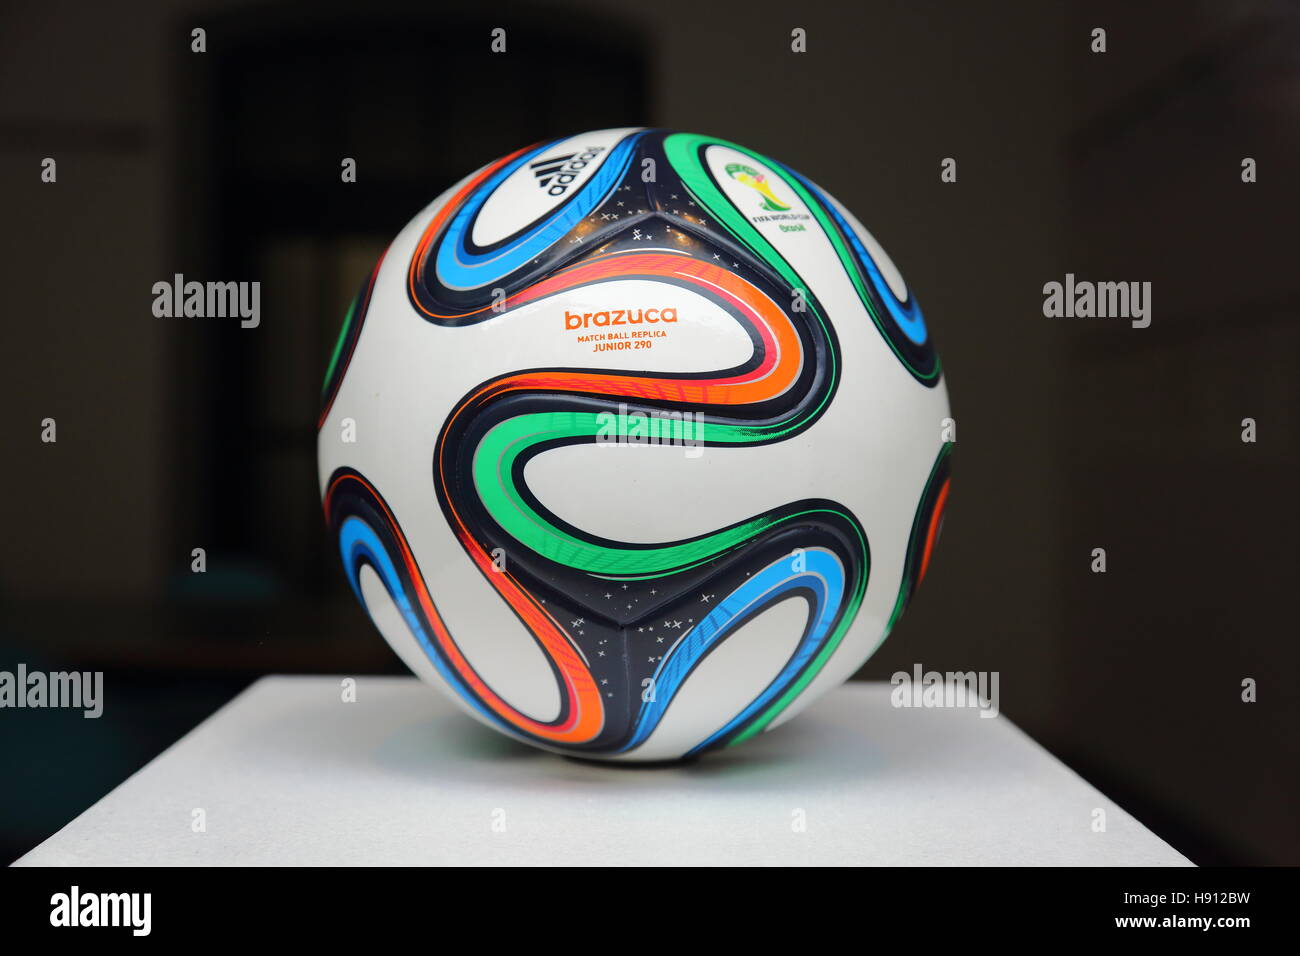 Adidas Brazuca, le ballon de match officiel pour la Coupe du monde de la FIFA 2014 au Brésil Banque D'Images